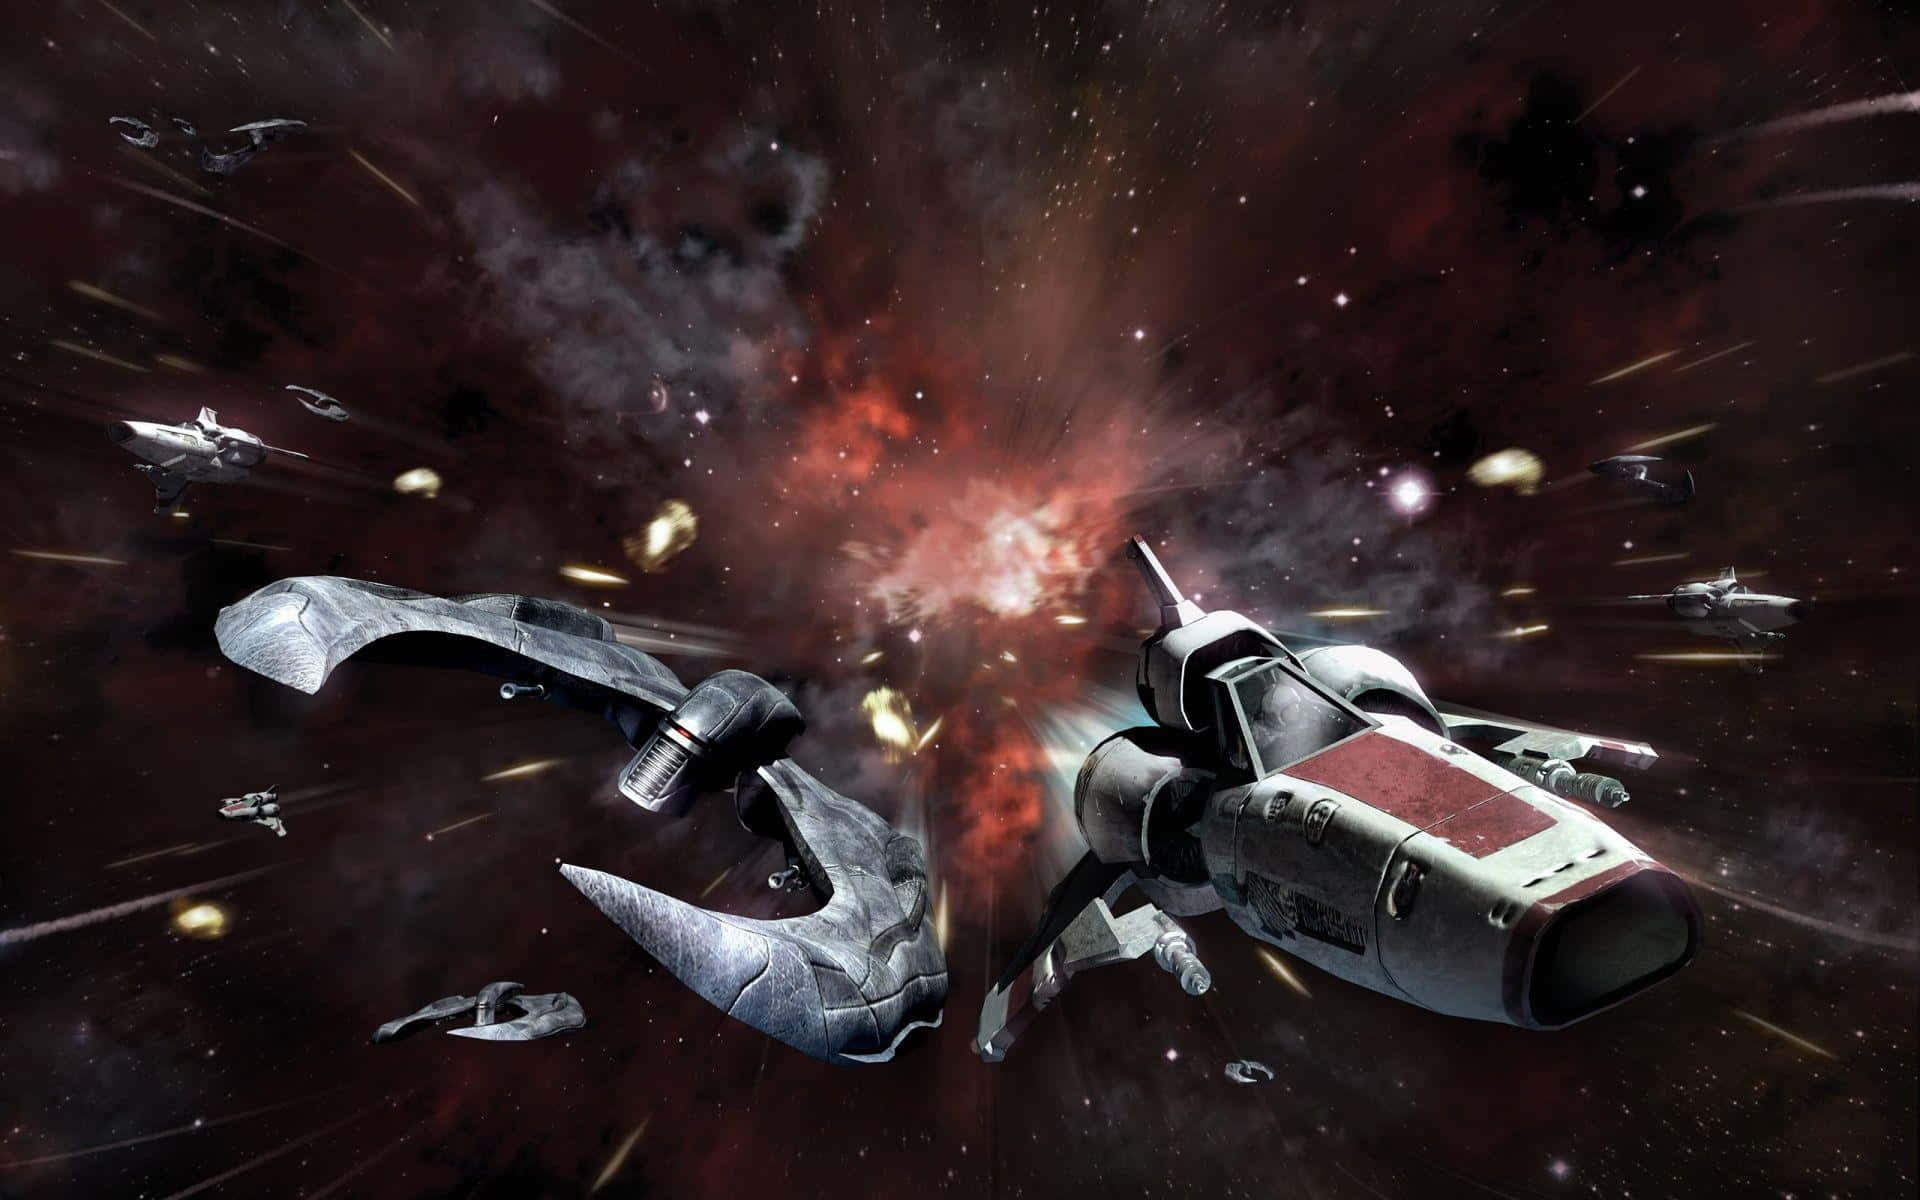 Eineikonische Weltraumschlacht Aus Der Epischen Science-fiction-serie Battlestar Galactica Wallpaper